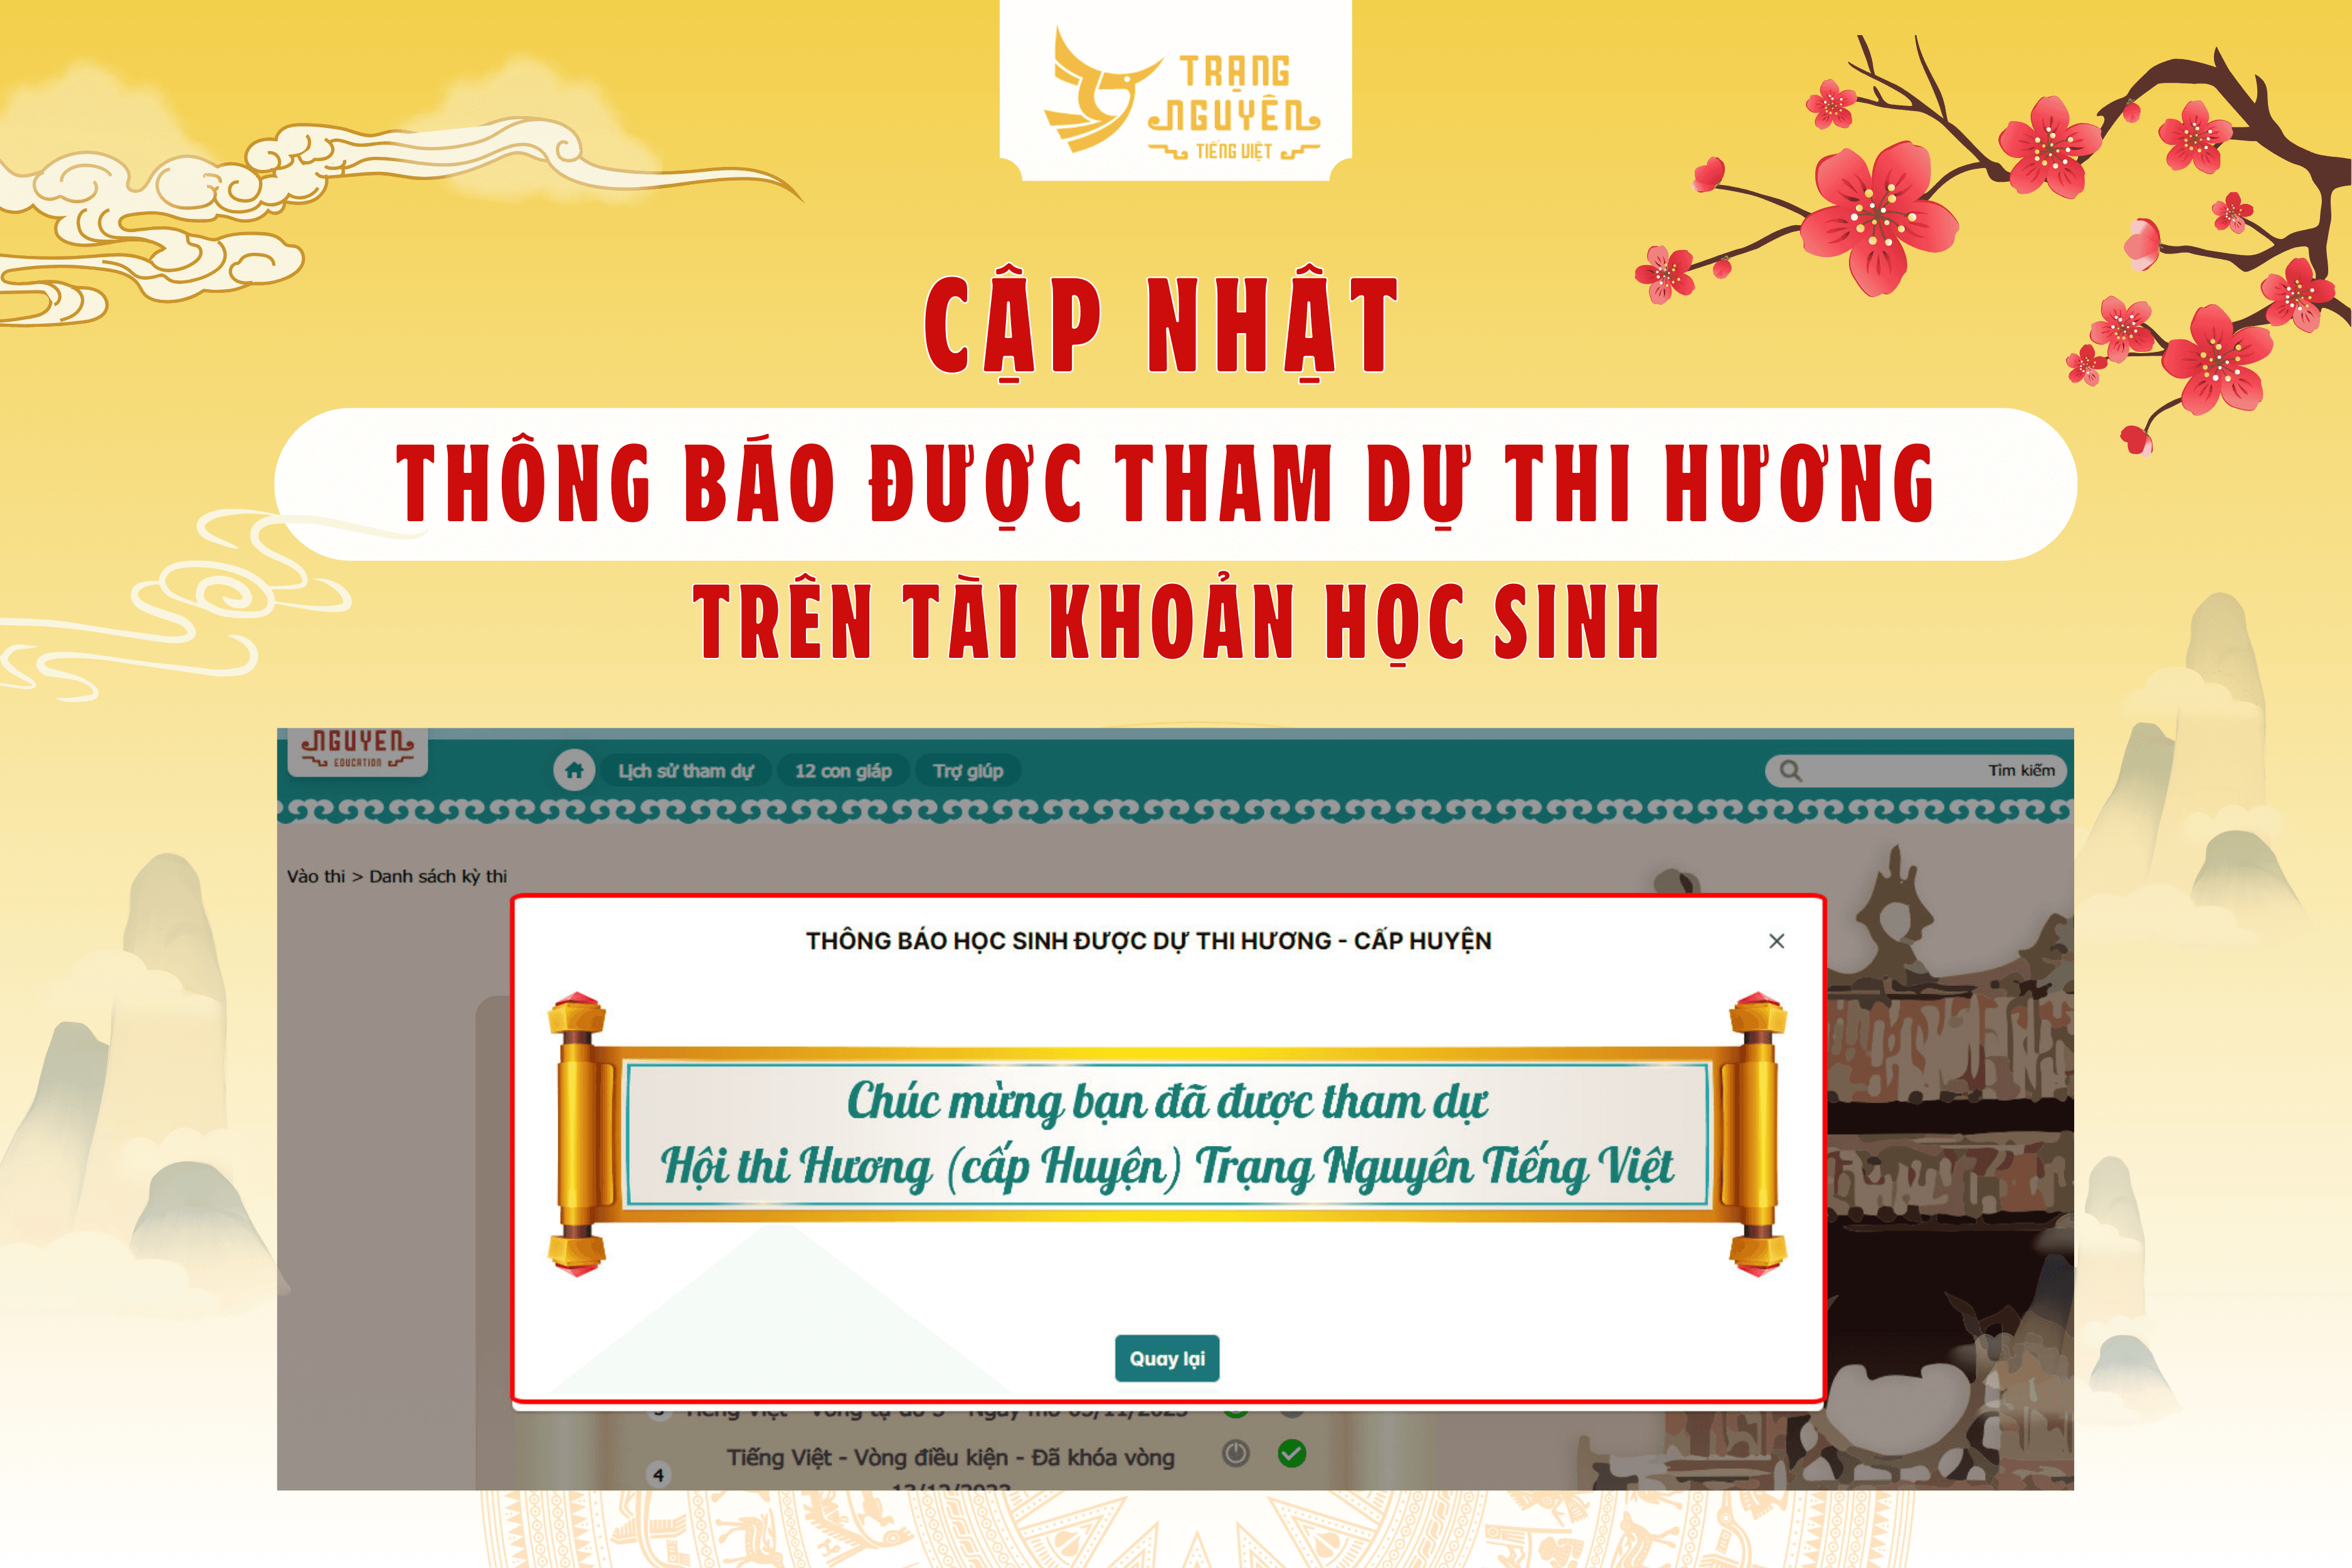 thong-bao-hoc-sinh-duoc-chon-tham-du-thi-huong-1